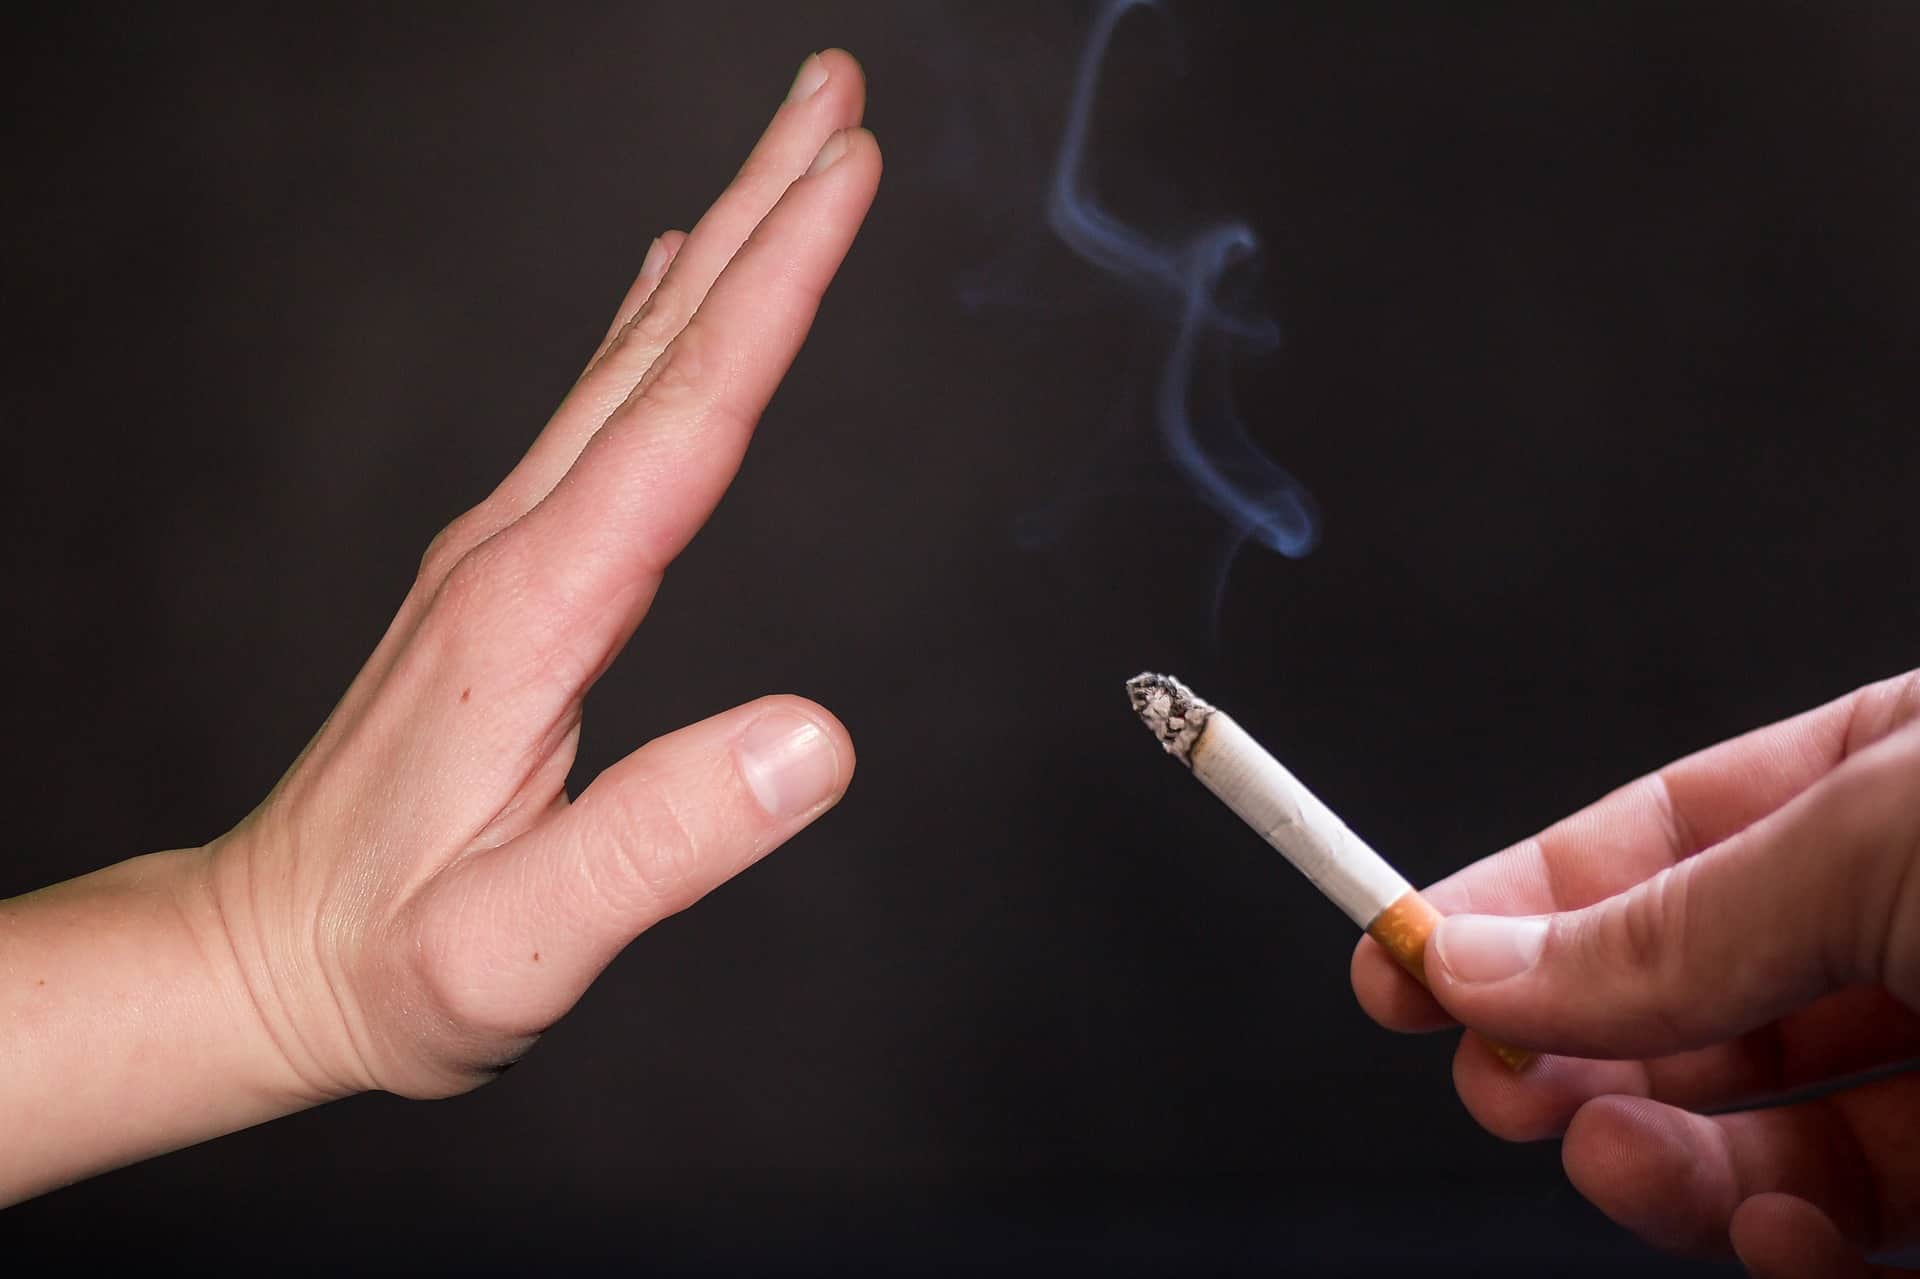 Snus statt Zigarette: Eine Hand zeigt einer brennende Zigarette Stopp. /Foto: pixabay (tumisu)